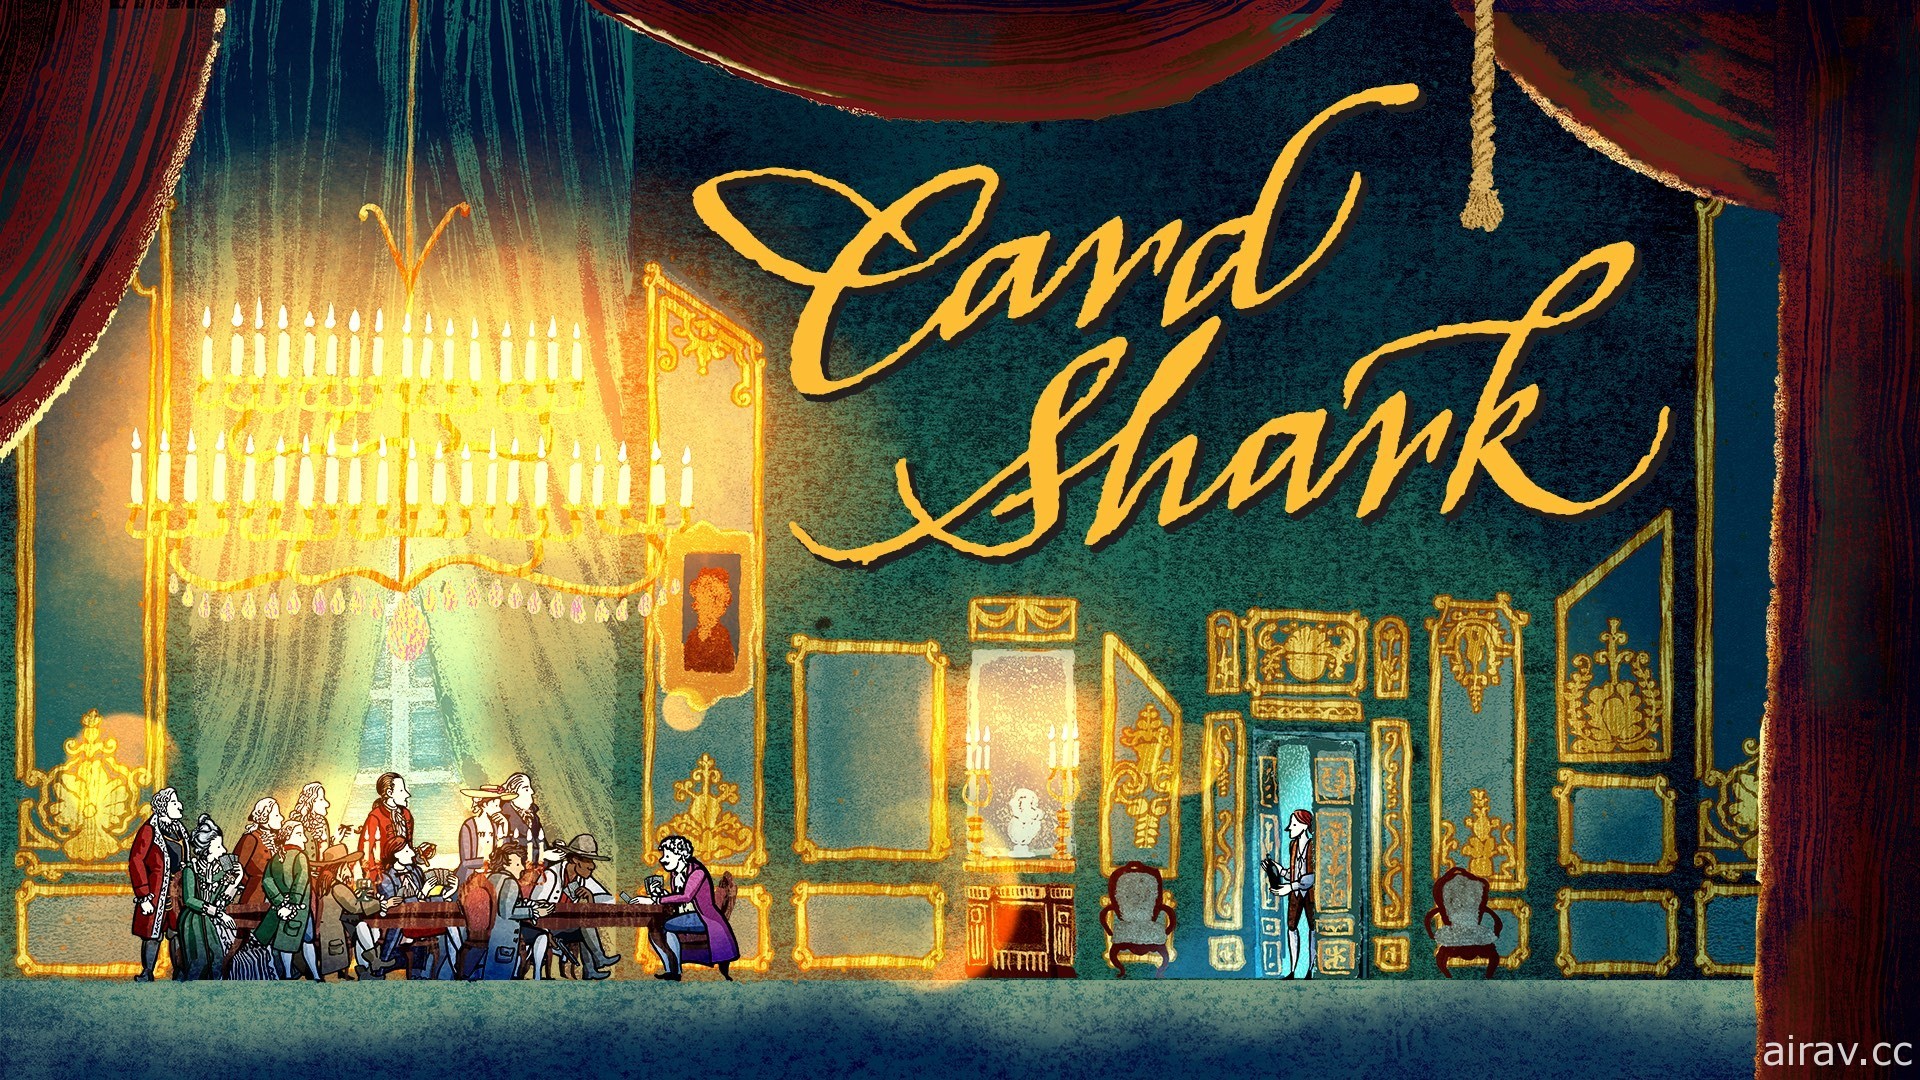 《王權 Reigns》團隊新作《王牌卡神 Card Shark》即將發行 展開中世紀歐洲冒險賭局